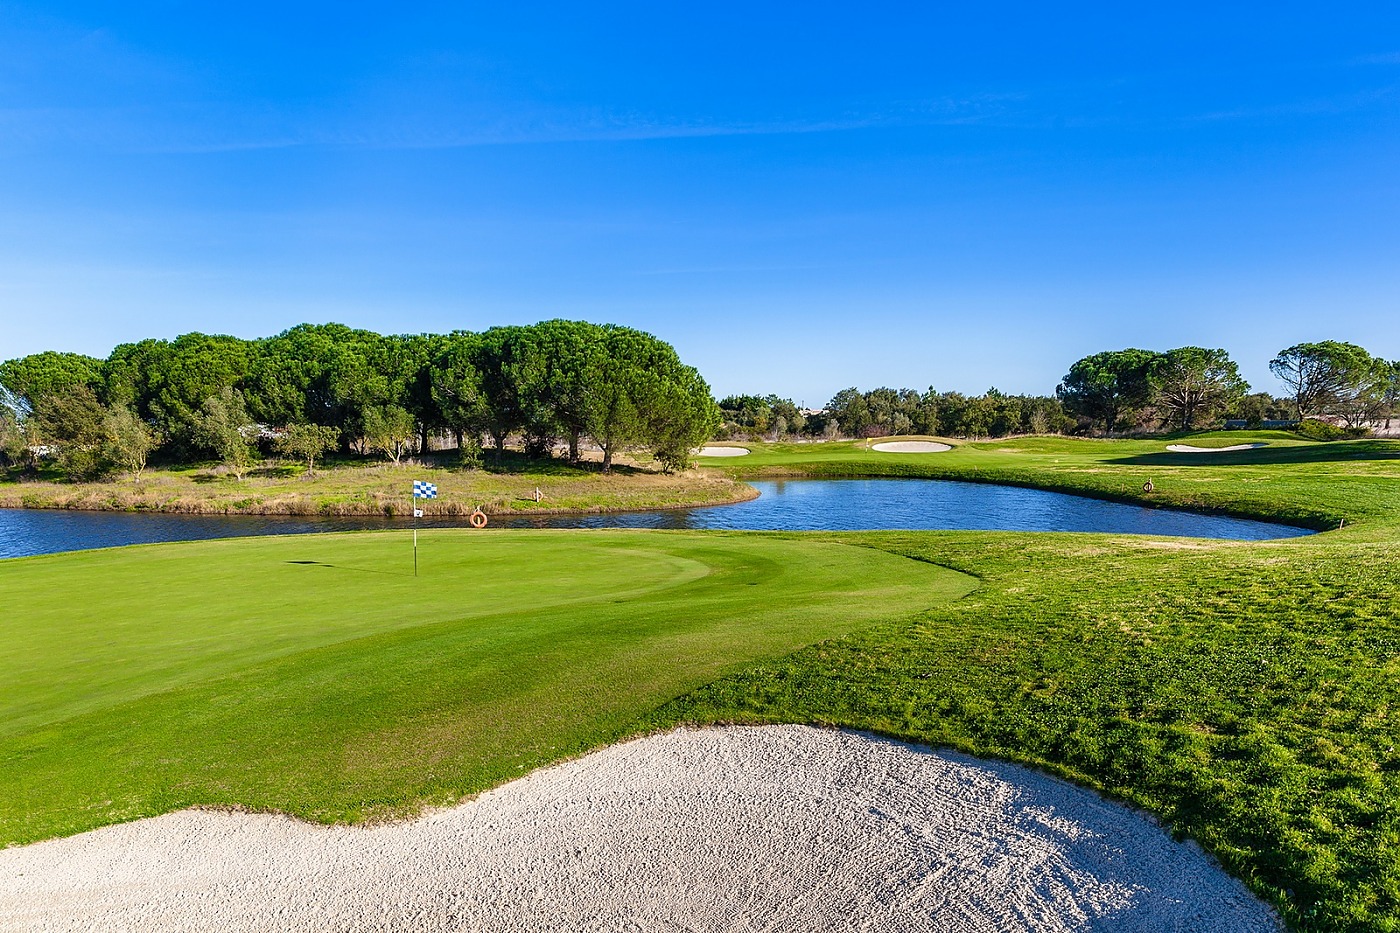 markør deltager konsonant Montado Golf Course - Golf Courses - Golf Holidays in Portugal - Golf  Packages & Golf Hotels Lisbon, Algarve